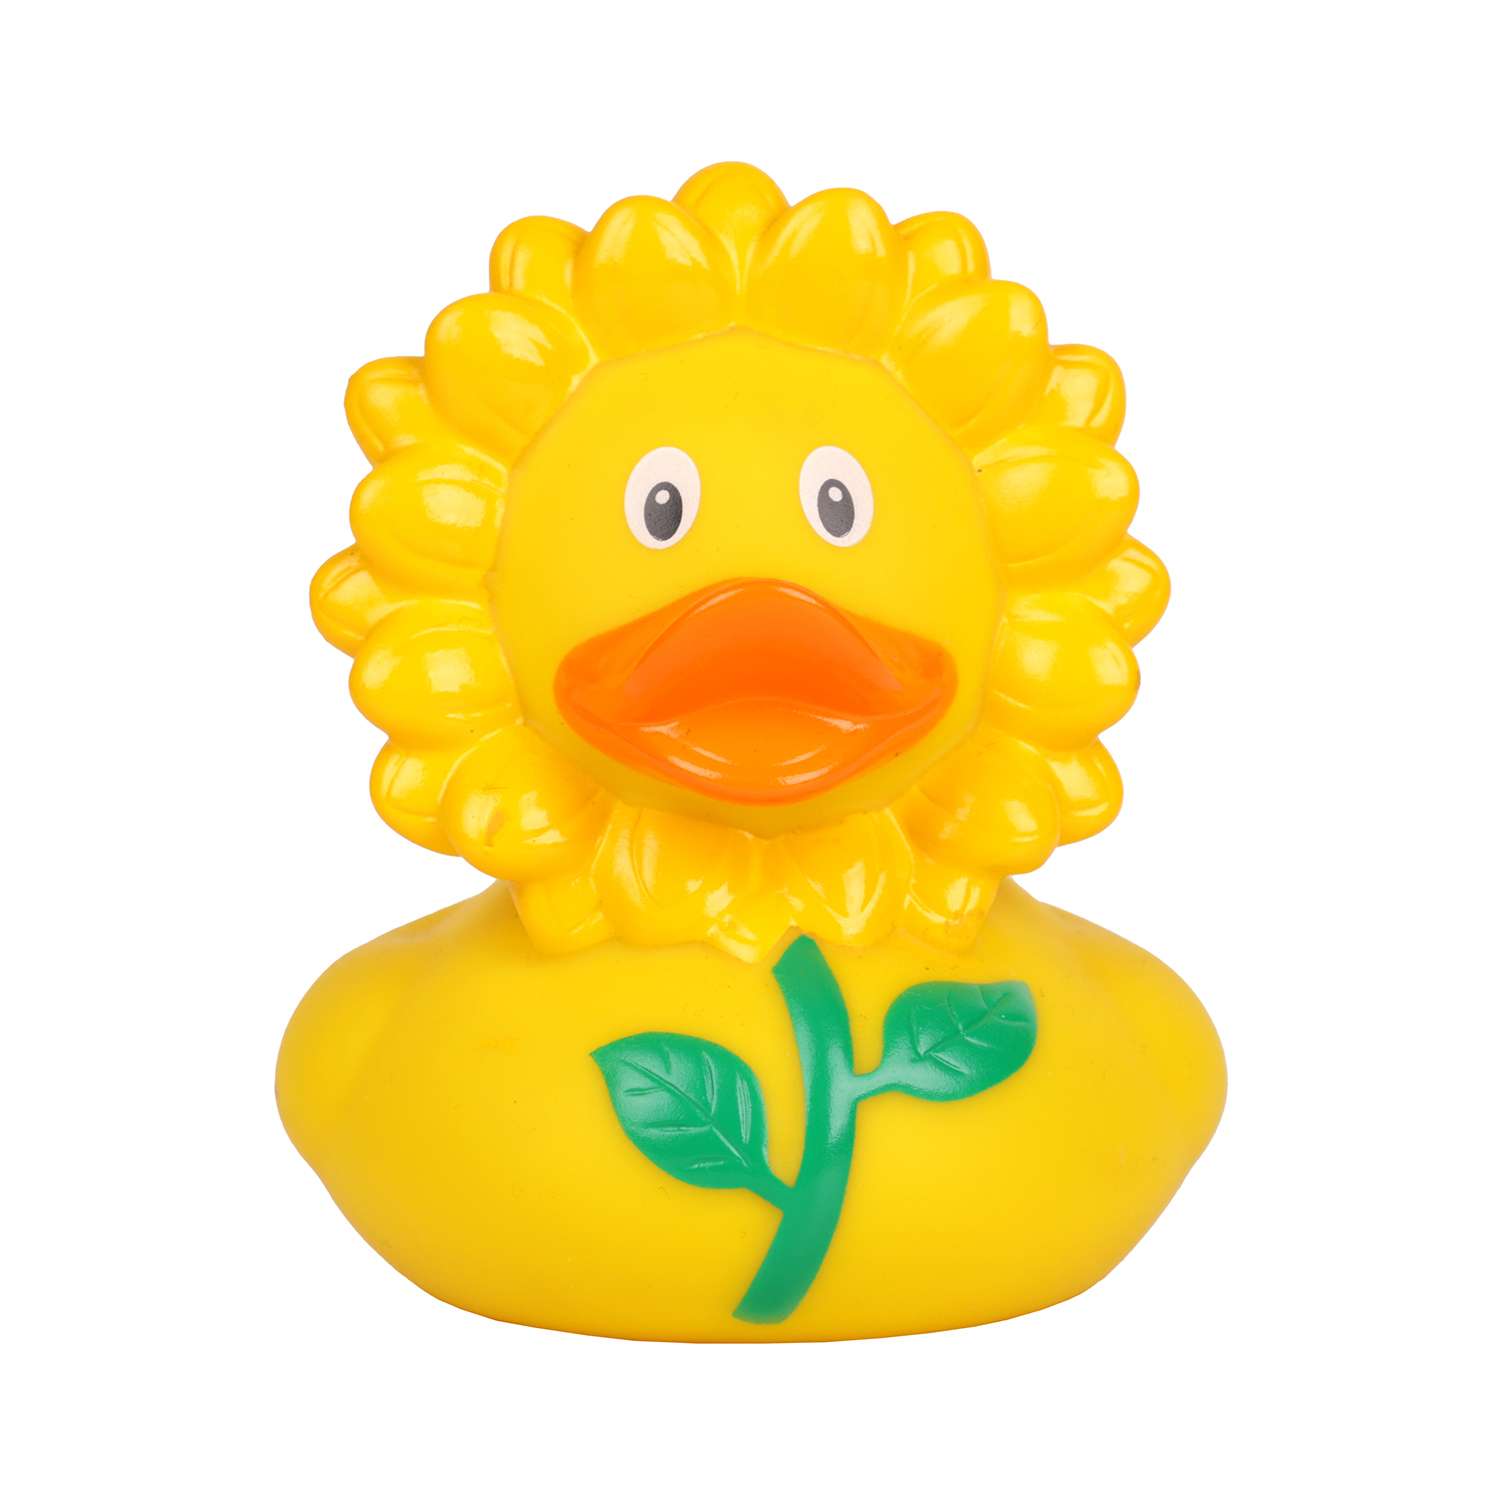 Игрушка для ванны сувенир Funny ducks Подсолнух уточка 1876 - фото 2